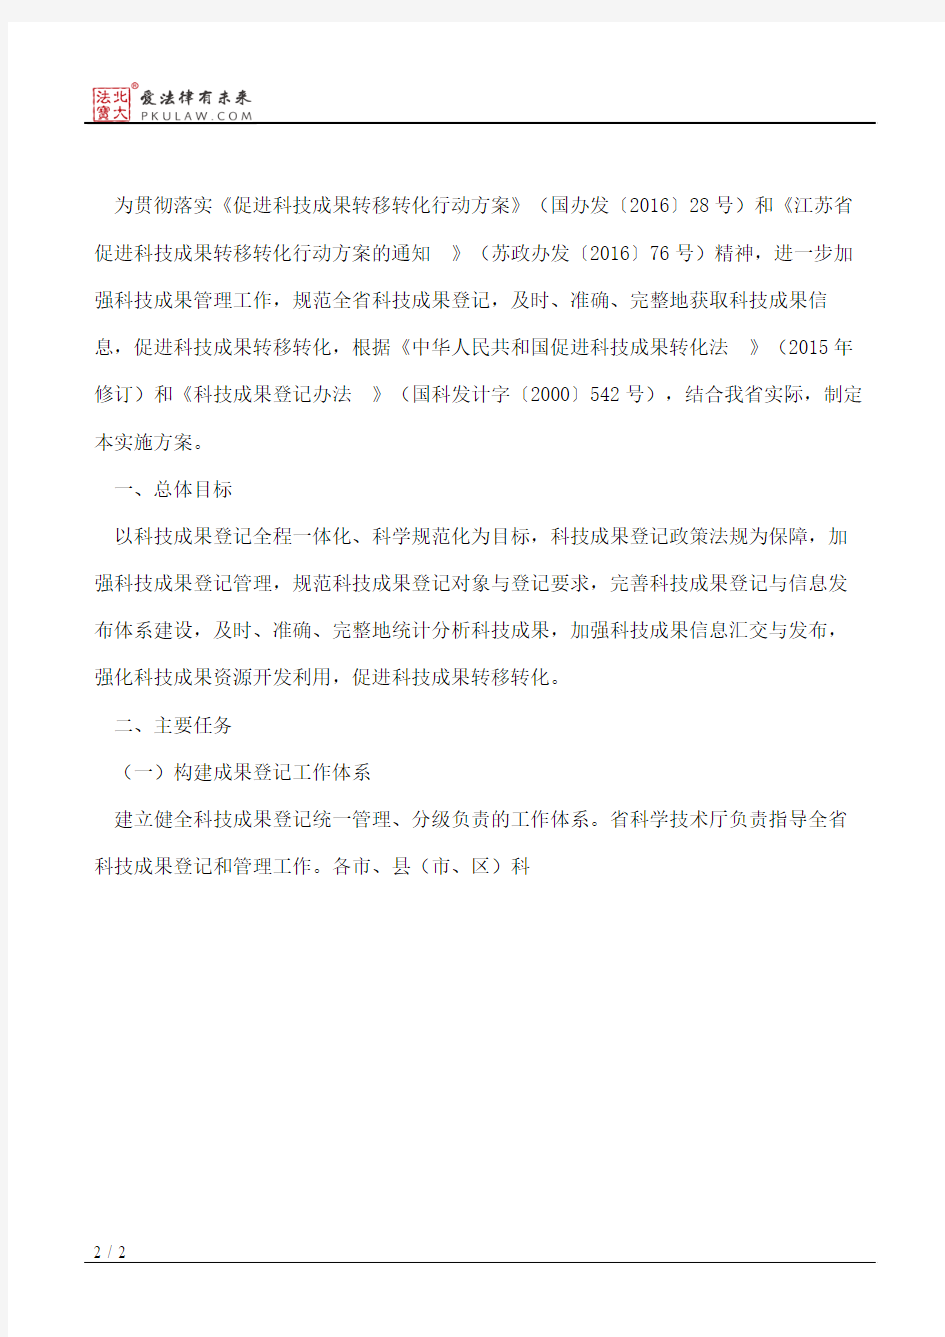 江苏省科学技术厅关于印发《江苏省科技成果登记实施方案》的通知